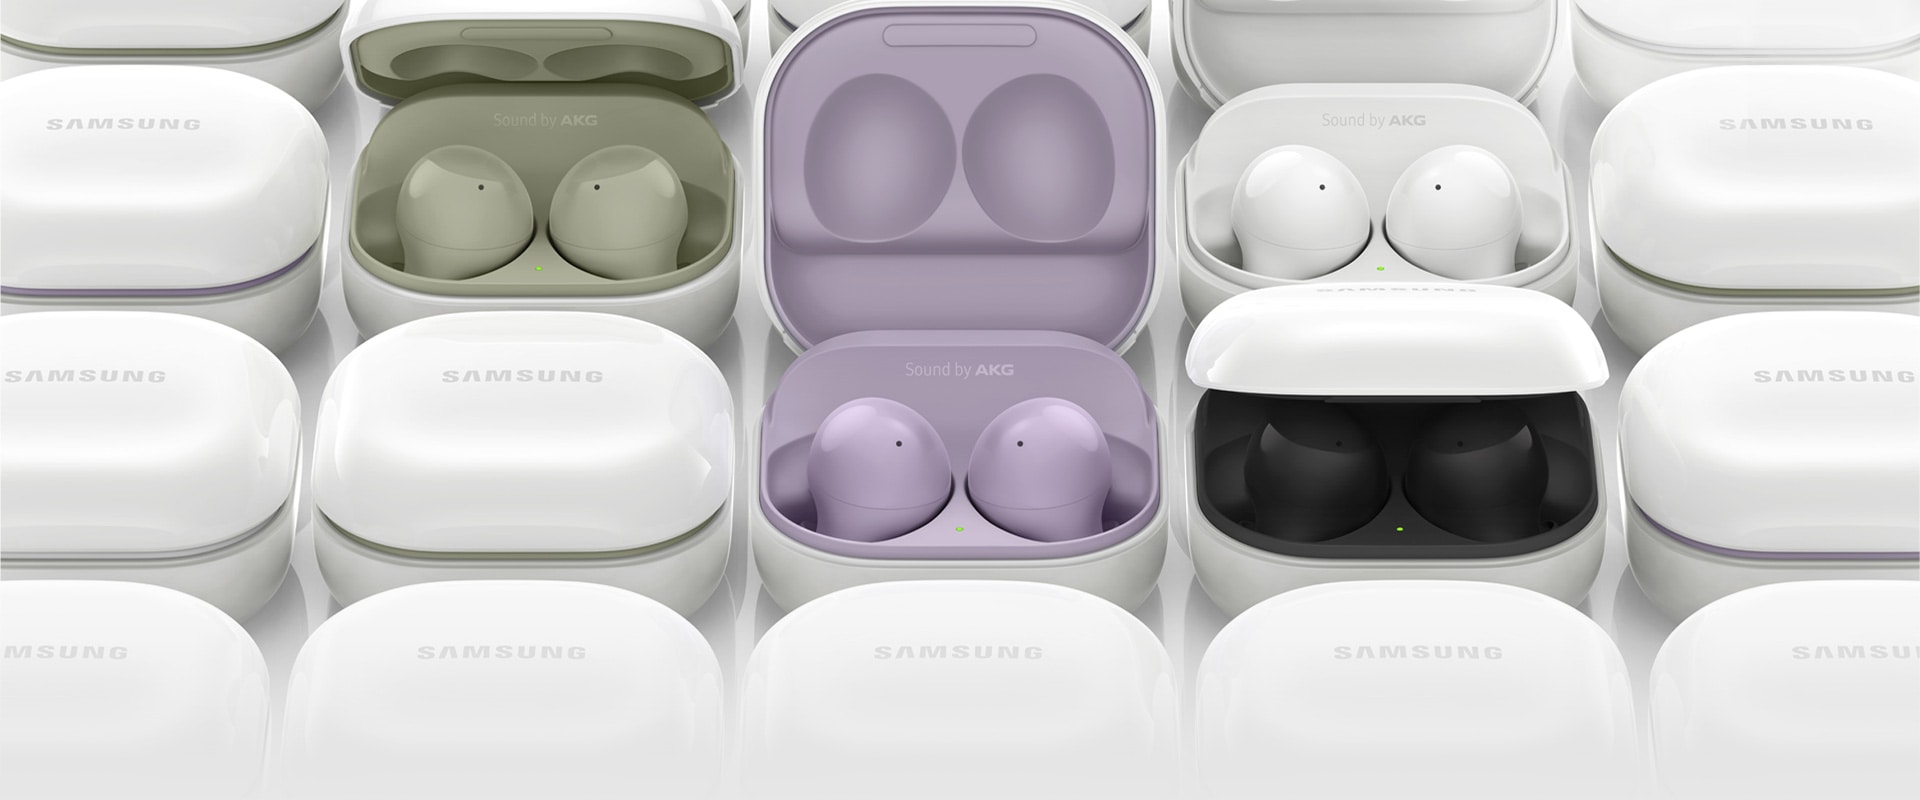 Galaxy Buds2 cases worden naast elkaar weergegeven. Een aantal van de cases zijn geopend. Ze hebben allemaal een andere kleur aan de binnenkant, van olijfgroen, lavendel, wit tot zwart.